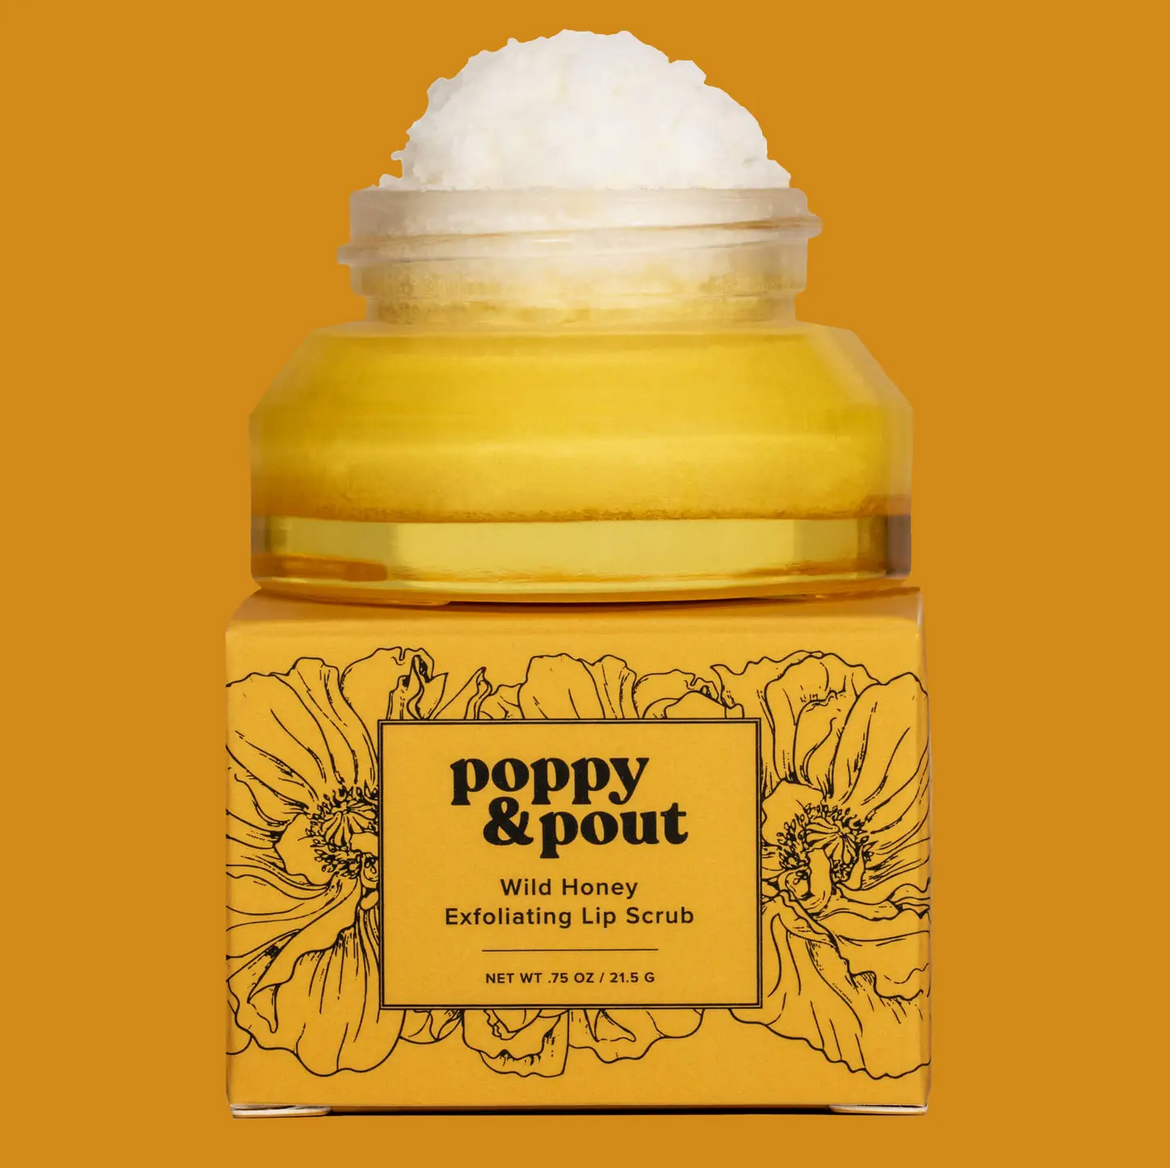 Wild Honey Lip Scrub, Poppy & Pout